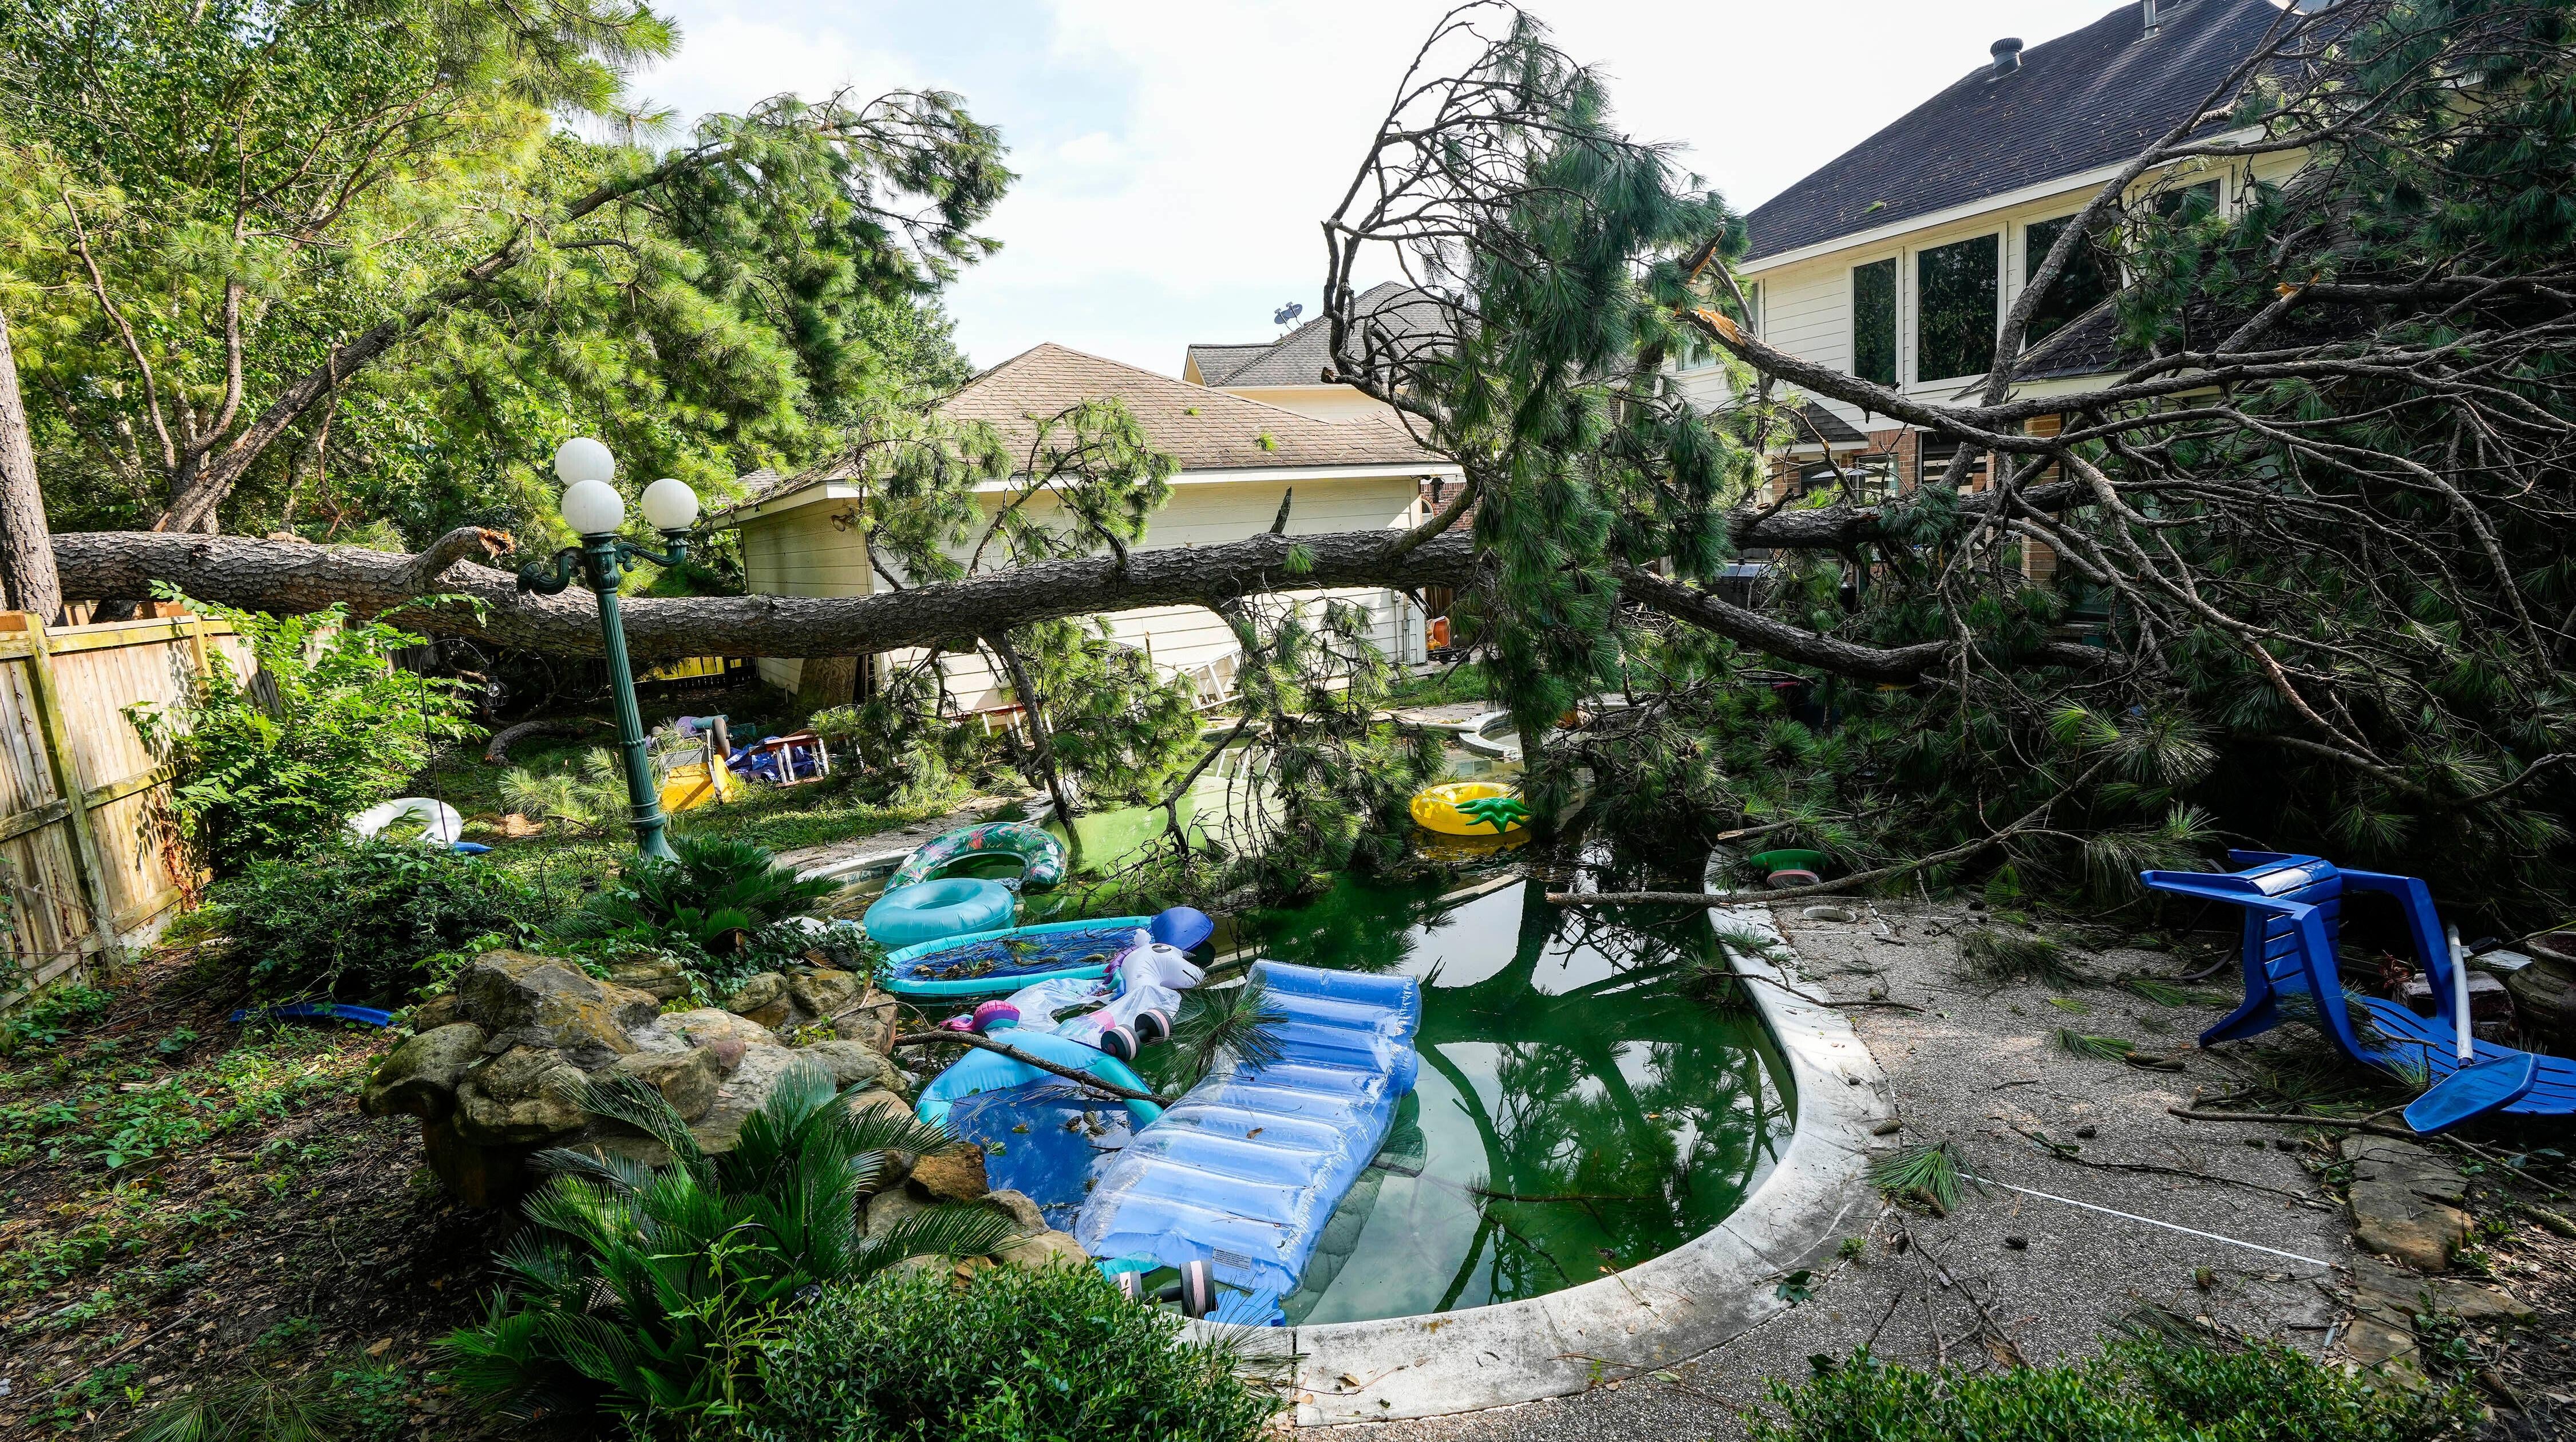 شجرة سقطت في الفناء الخلفي لمنزل جريس هاتفيلد ، الخميس ، 22 يونيو 2023 في سبرينغ ، تكساس ، بعد أن هبت عاصفة ليلية في المنطقة ، مما أدى إلى انقطاع التيار الكهربائي وسقوط الأشجار.